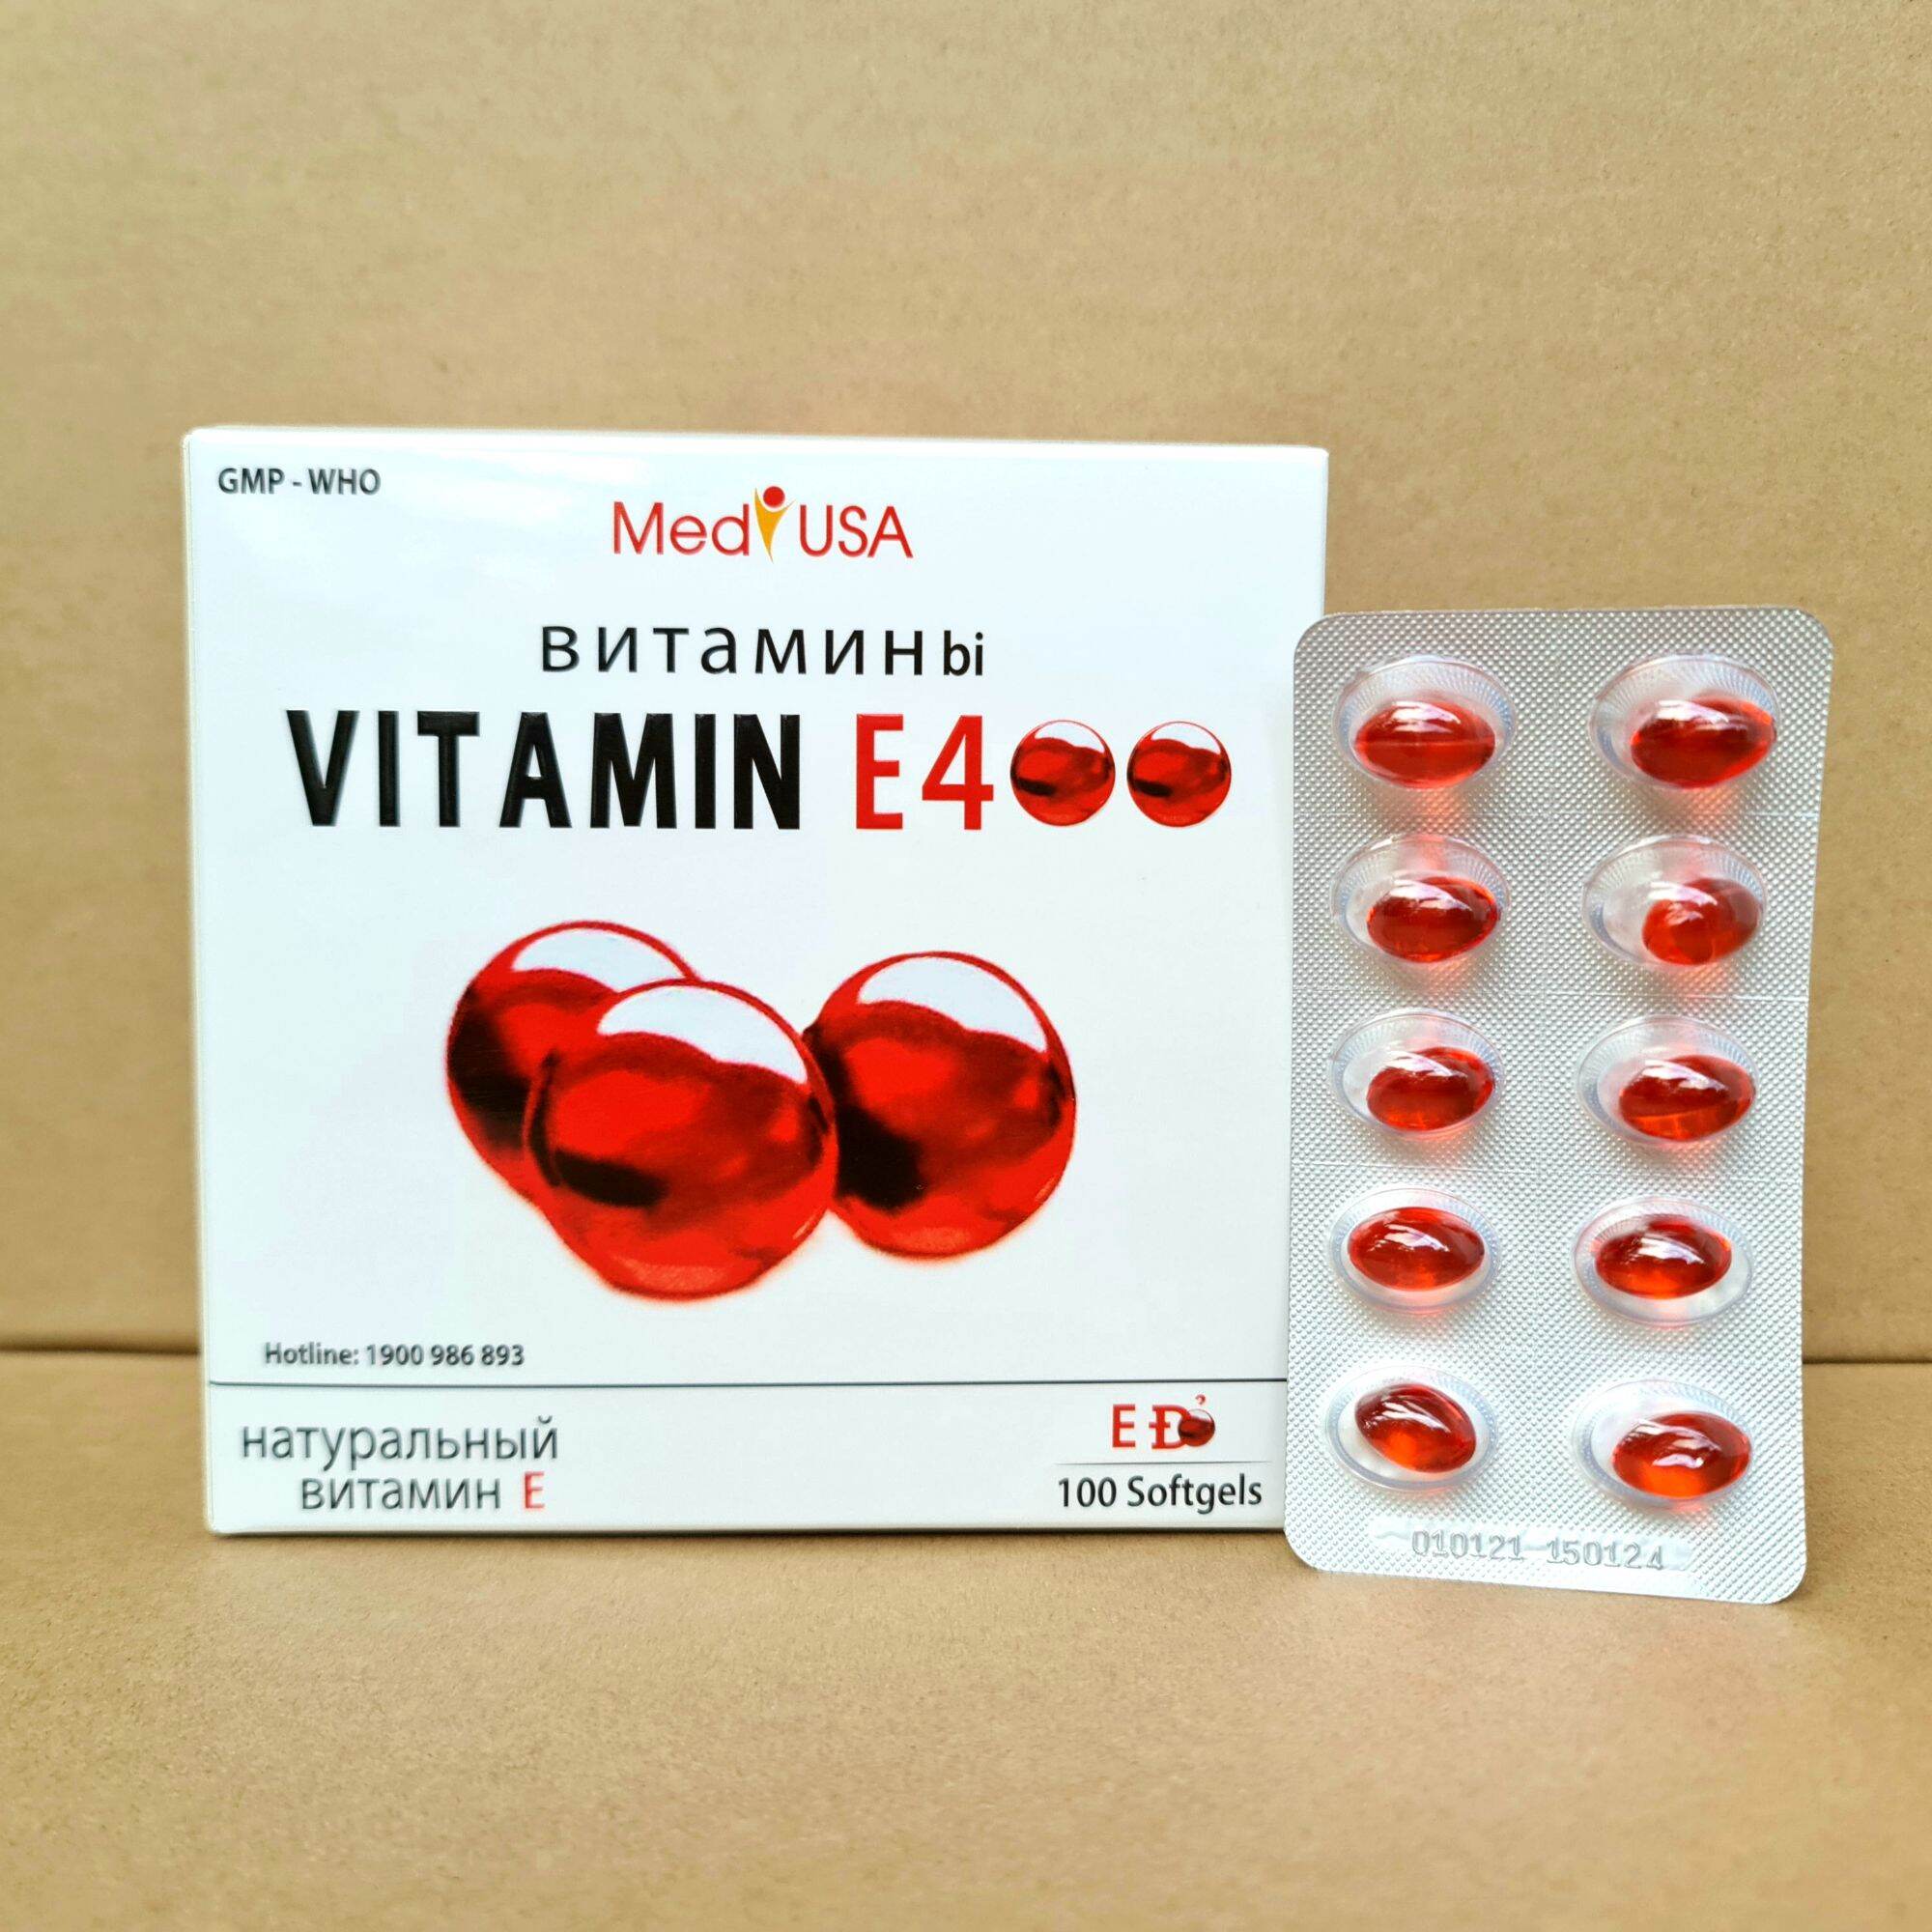 Viên uống vitamin E 400 đẹp da, sáng da, hạn chế lão hoá da hộp 100 viên nhập khẩu